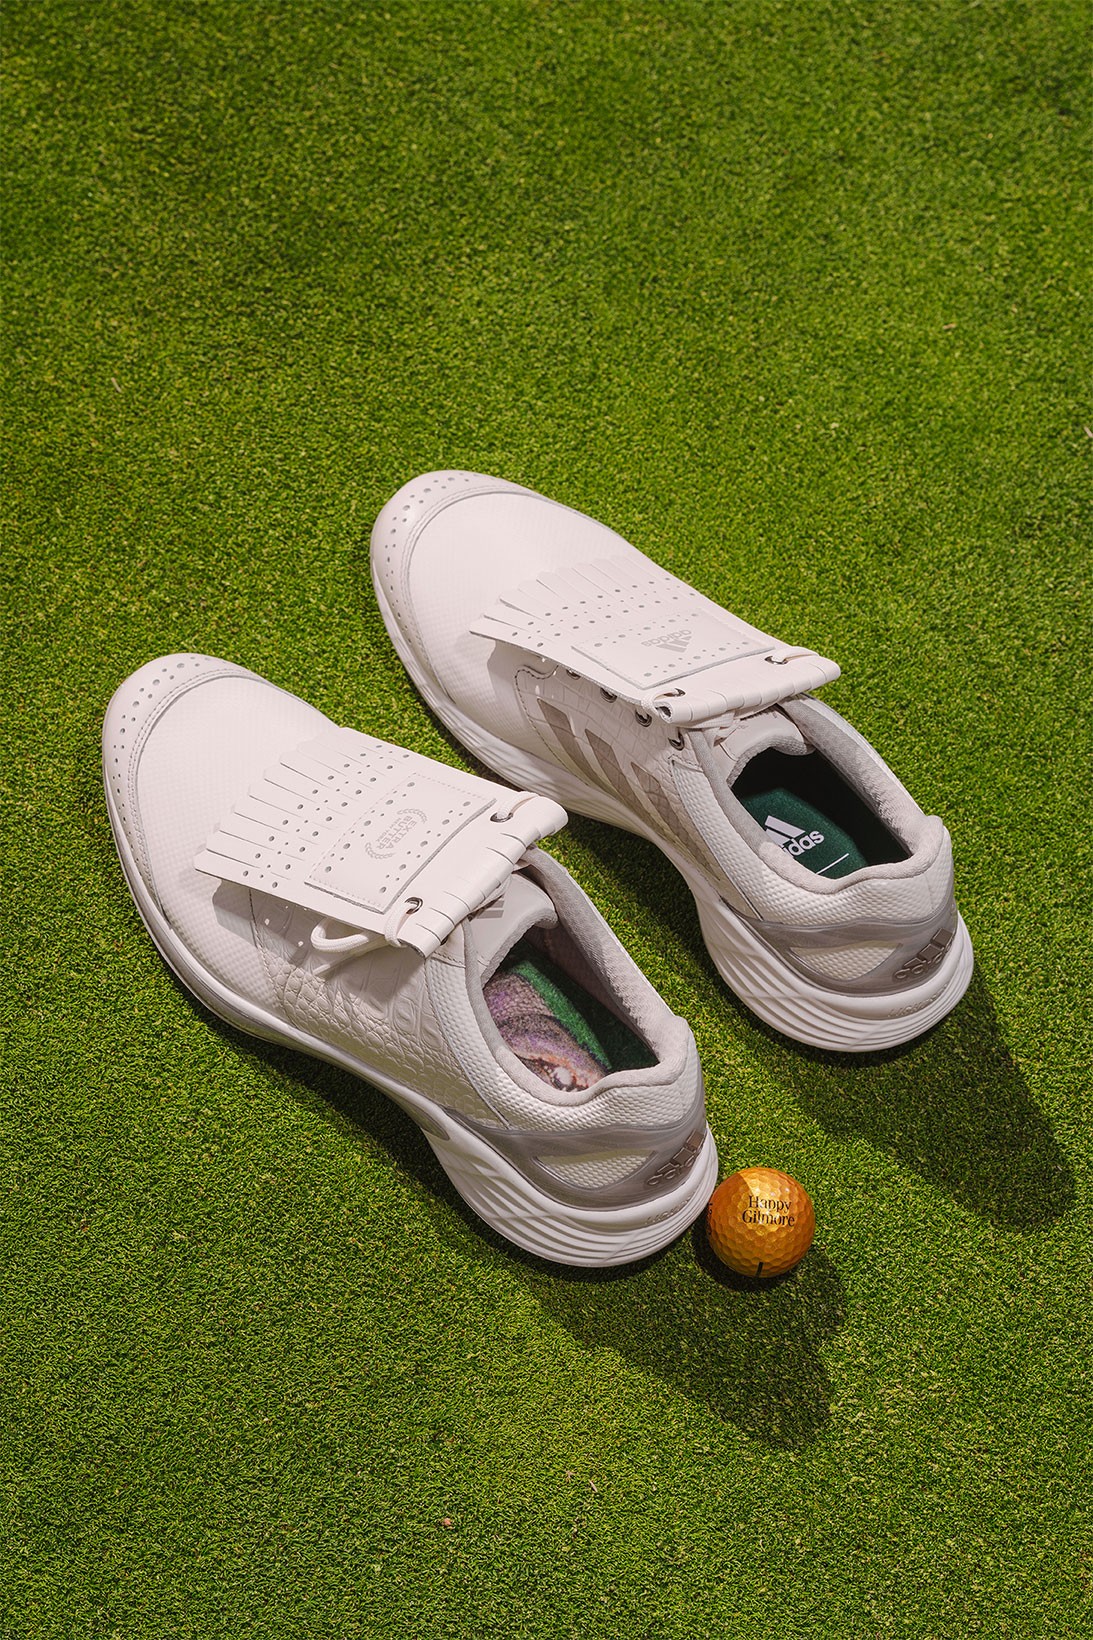 adidas выпустил гольф-коллекцию в стиле комедии «Счастливчик Гилмор» (фото 14)